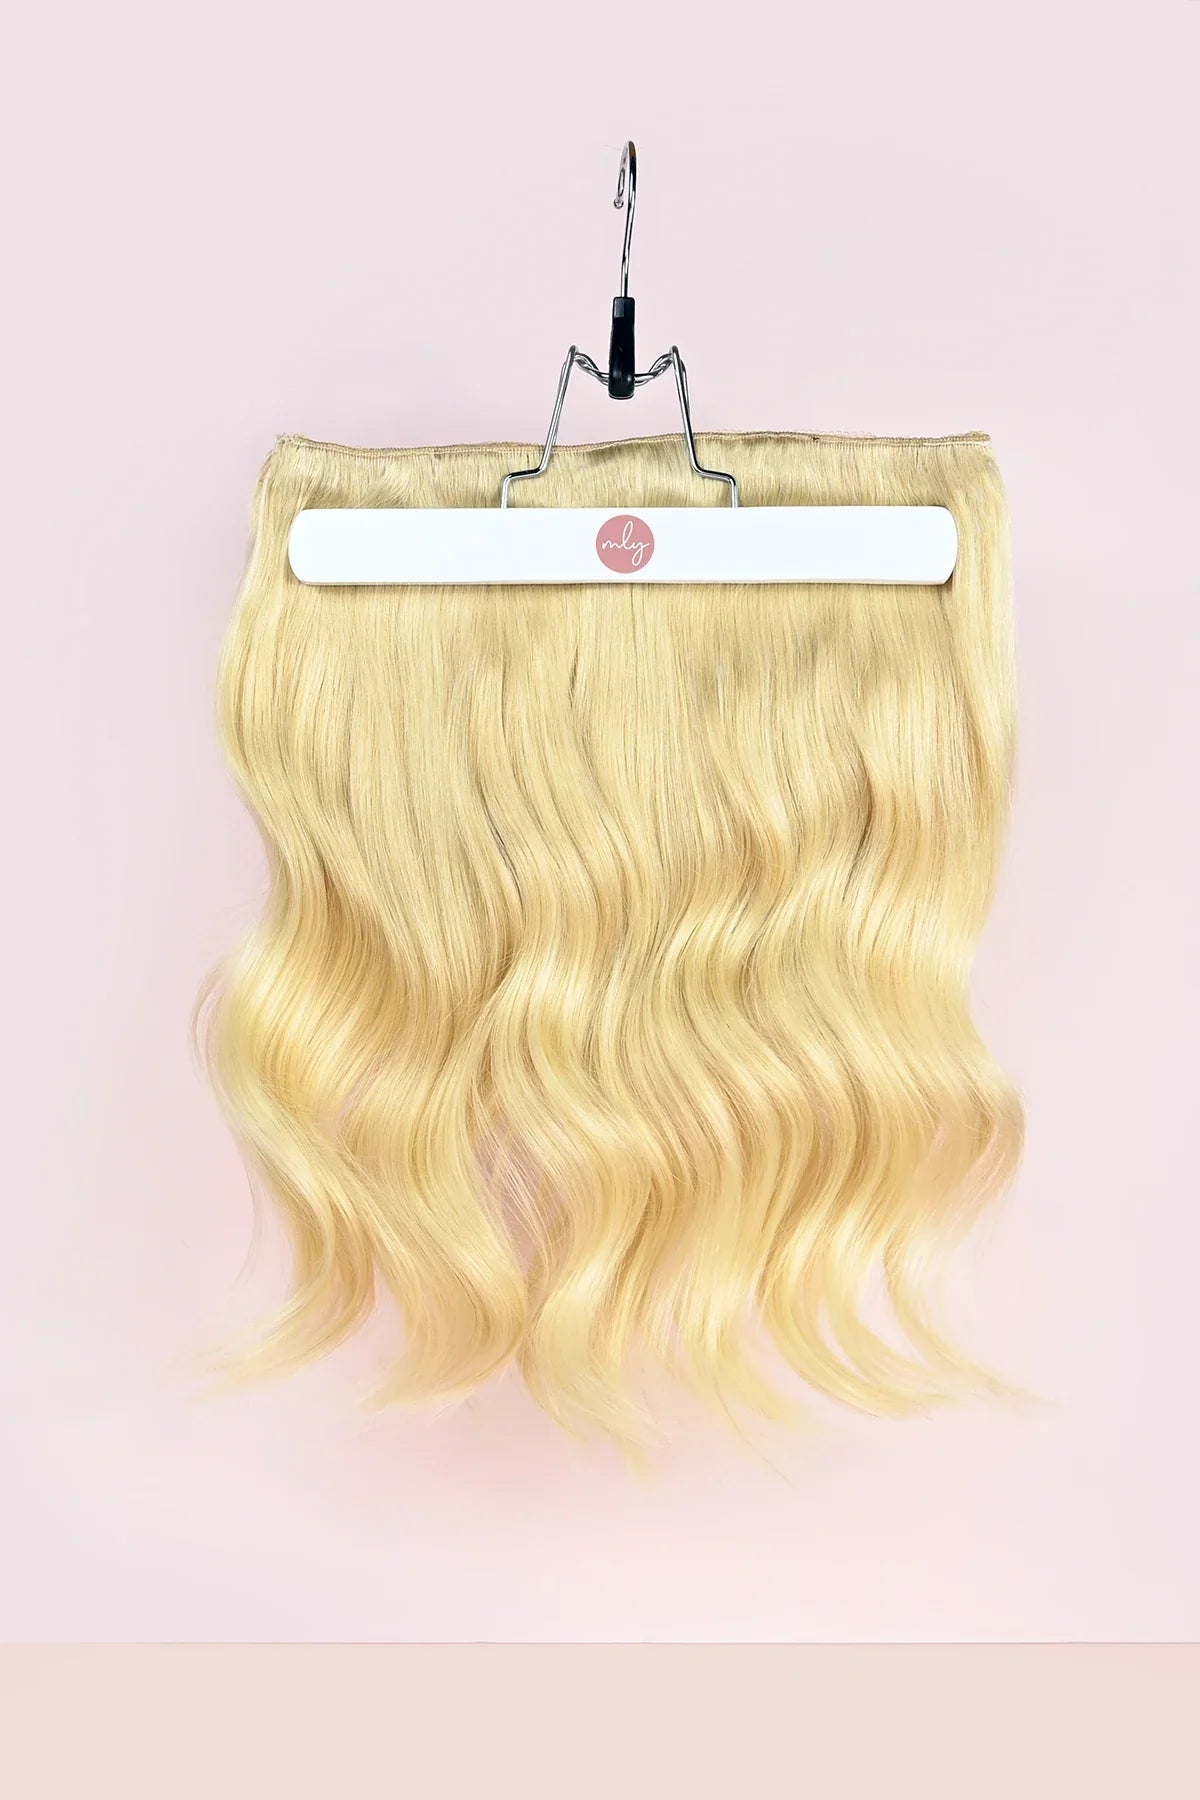 Bleach blonde geel blonde clip in hairextensions met een warm gele ondertoon. Verleng je haar gemakkelijk met clip in hair extensions van MLY Hairextensions. Goedkope extensions maar ook de beste hairextensions van Nederland.